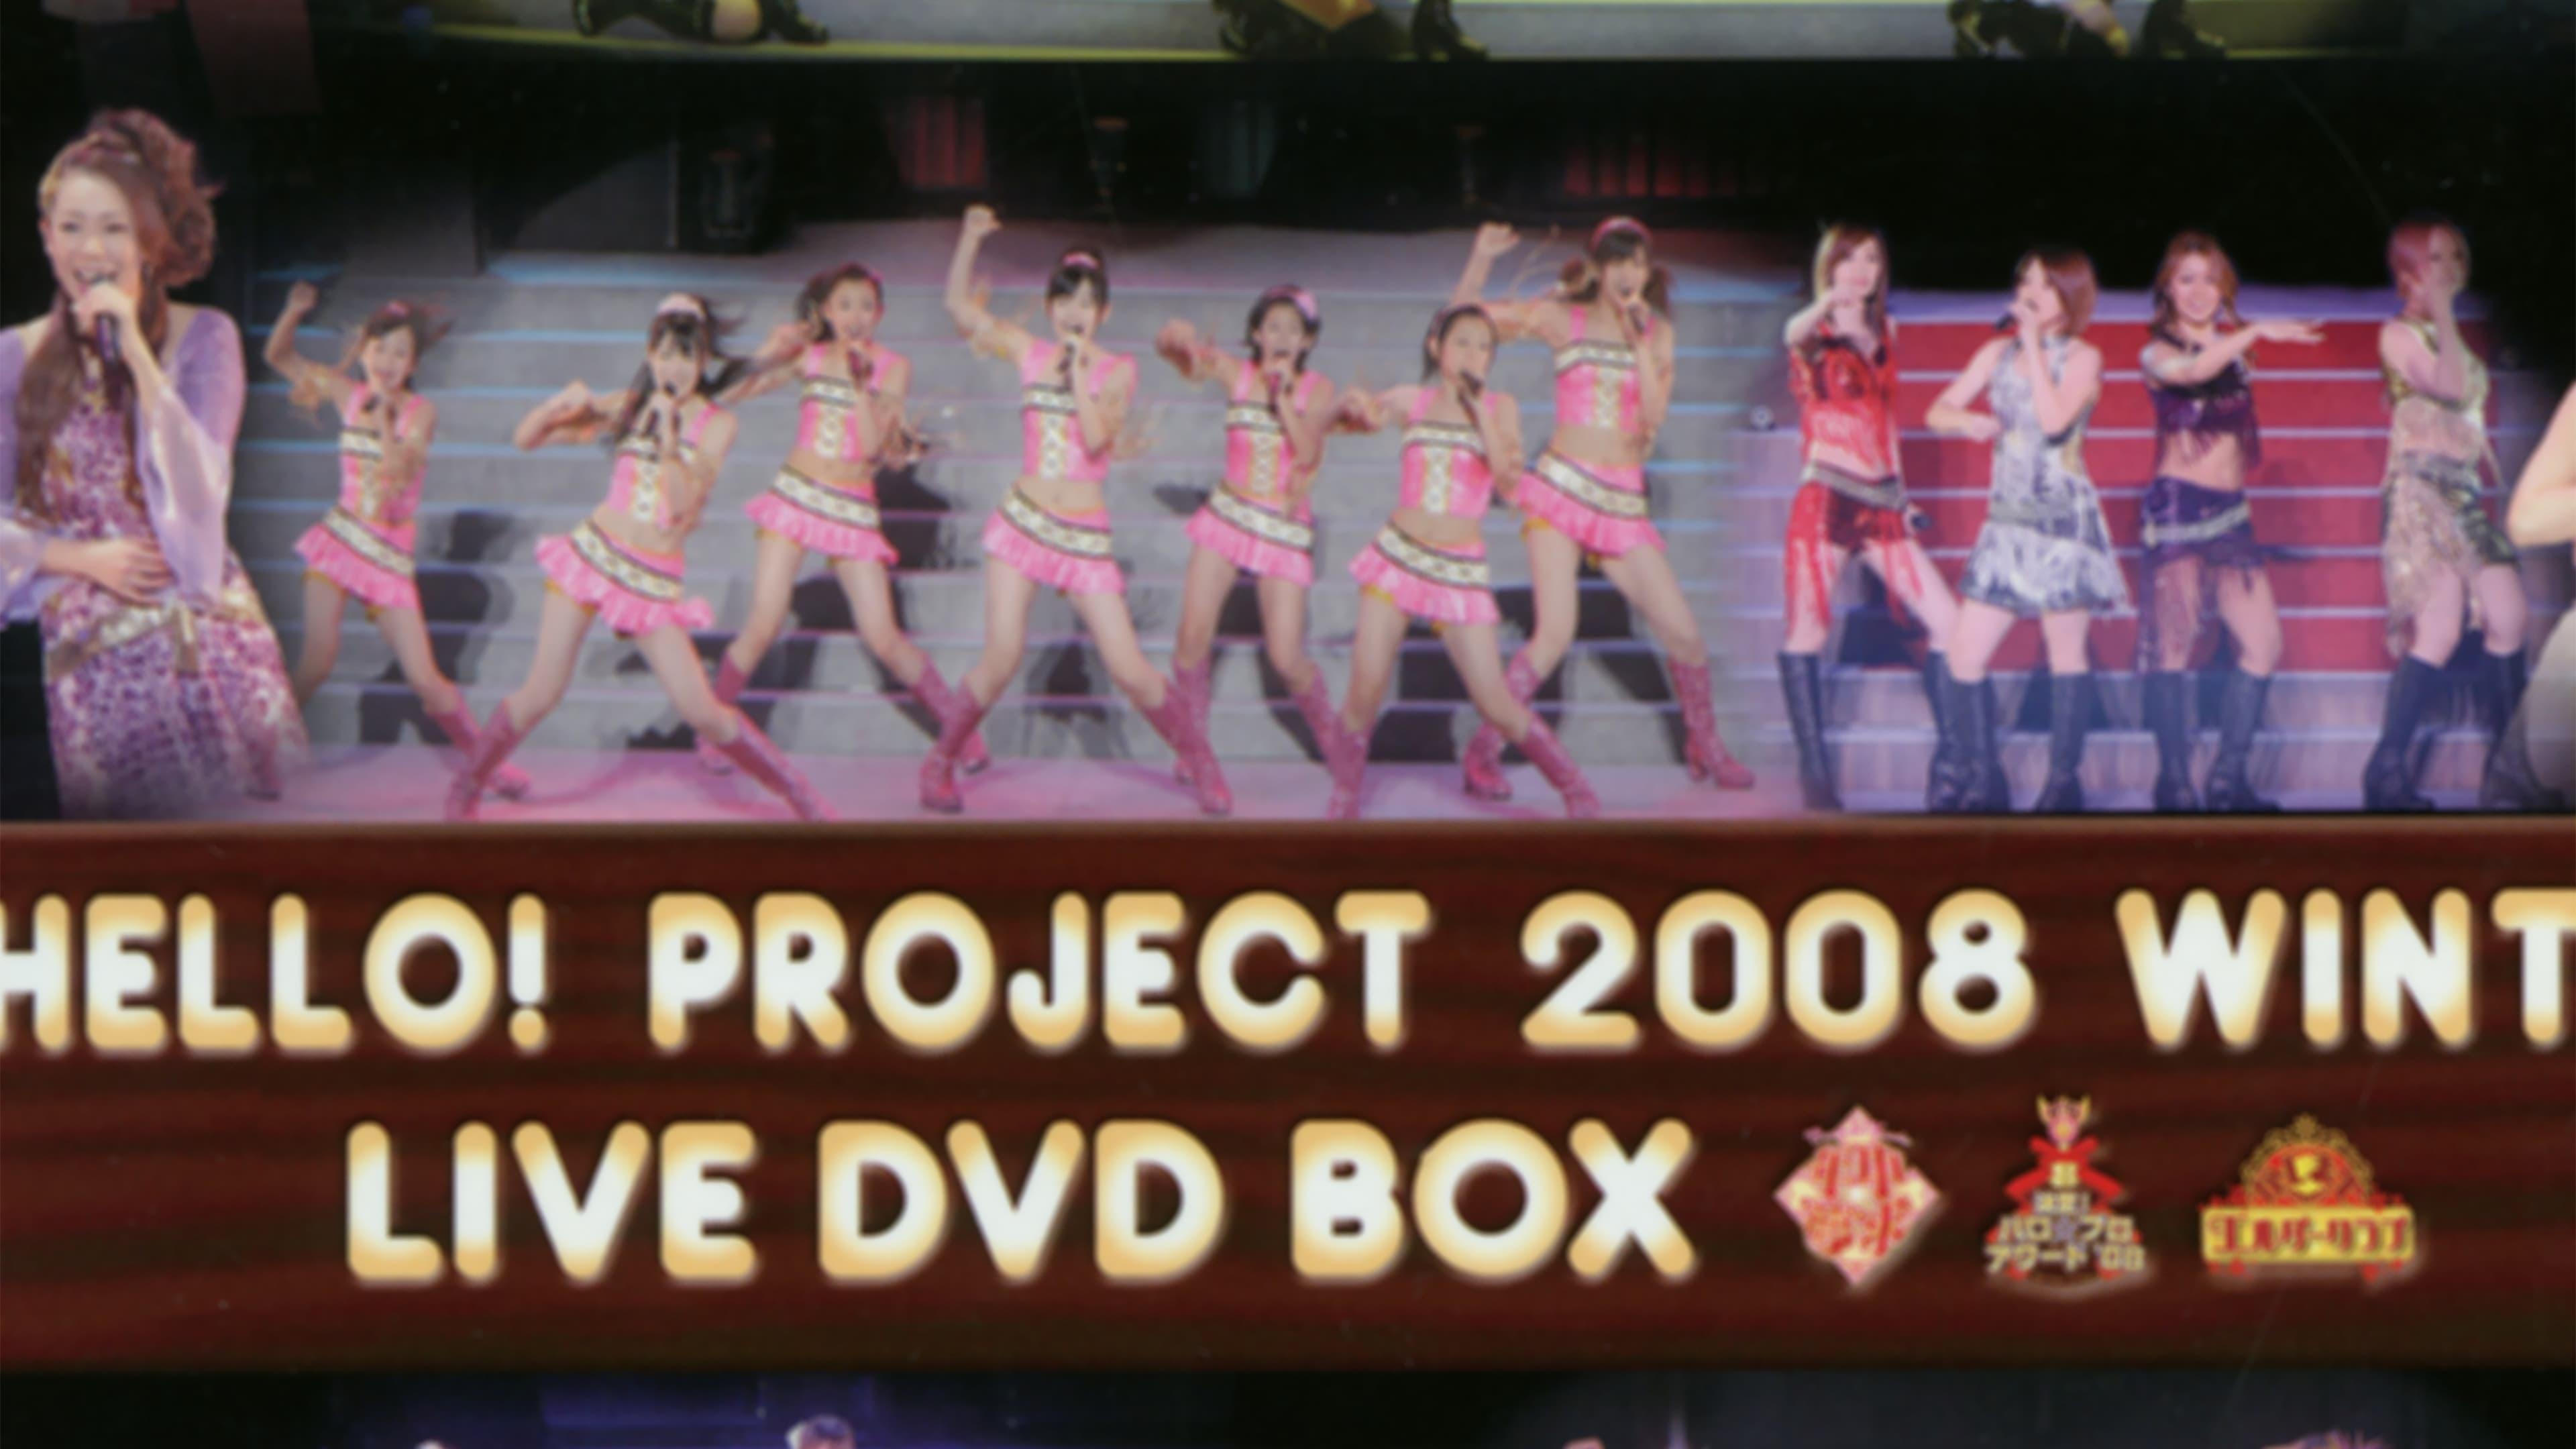 Hello! Project 2008 Winter ~Live DVD Box Bonus Video~ backdrop